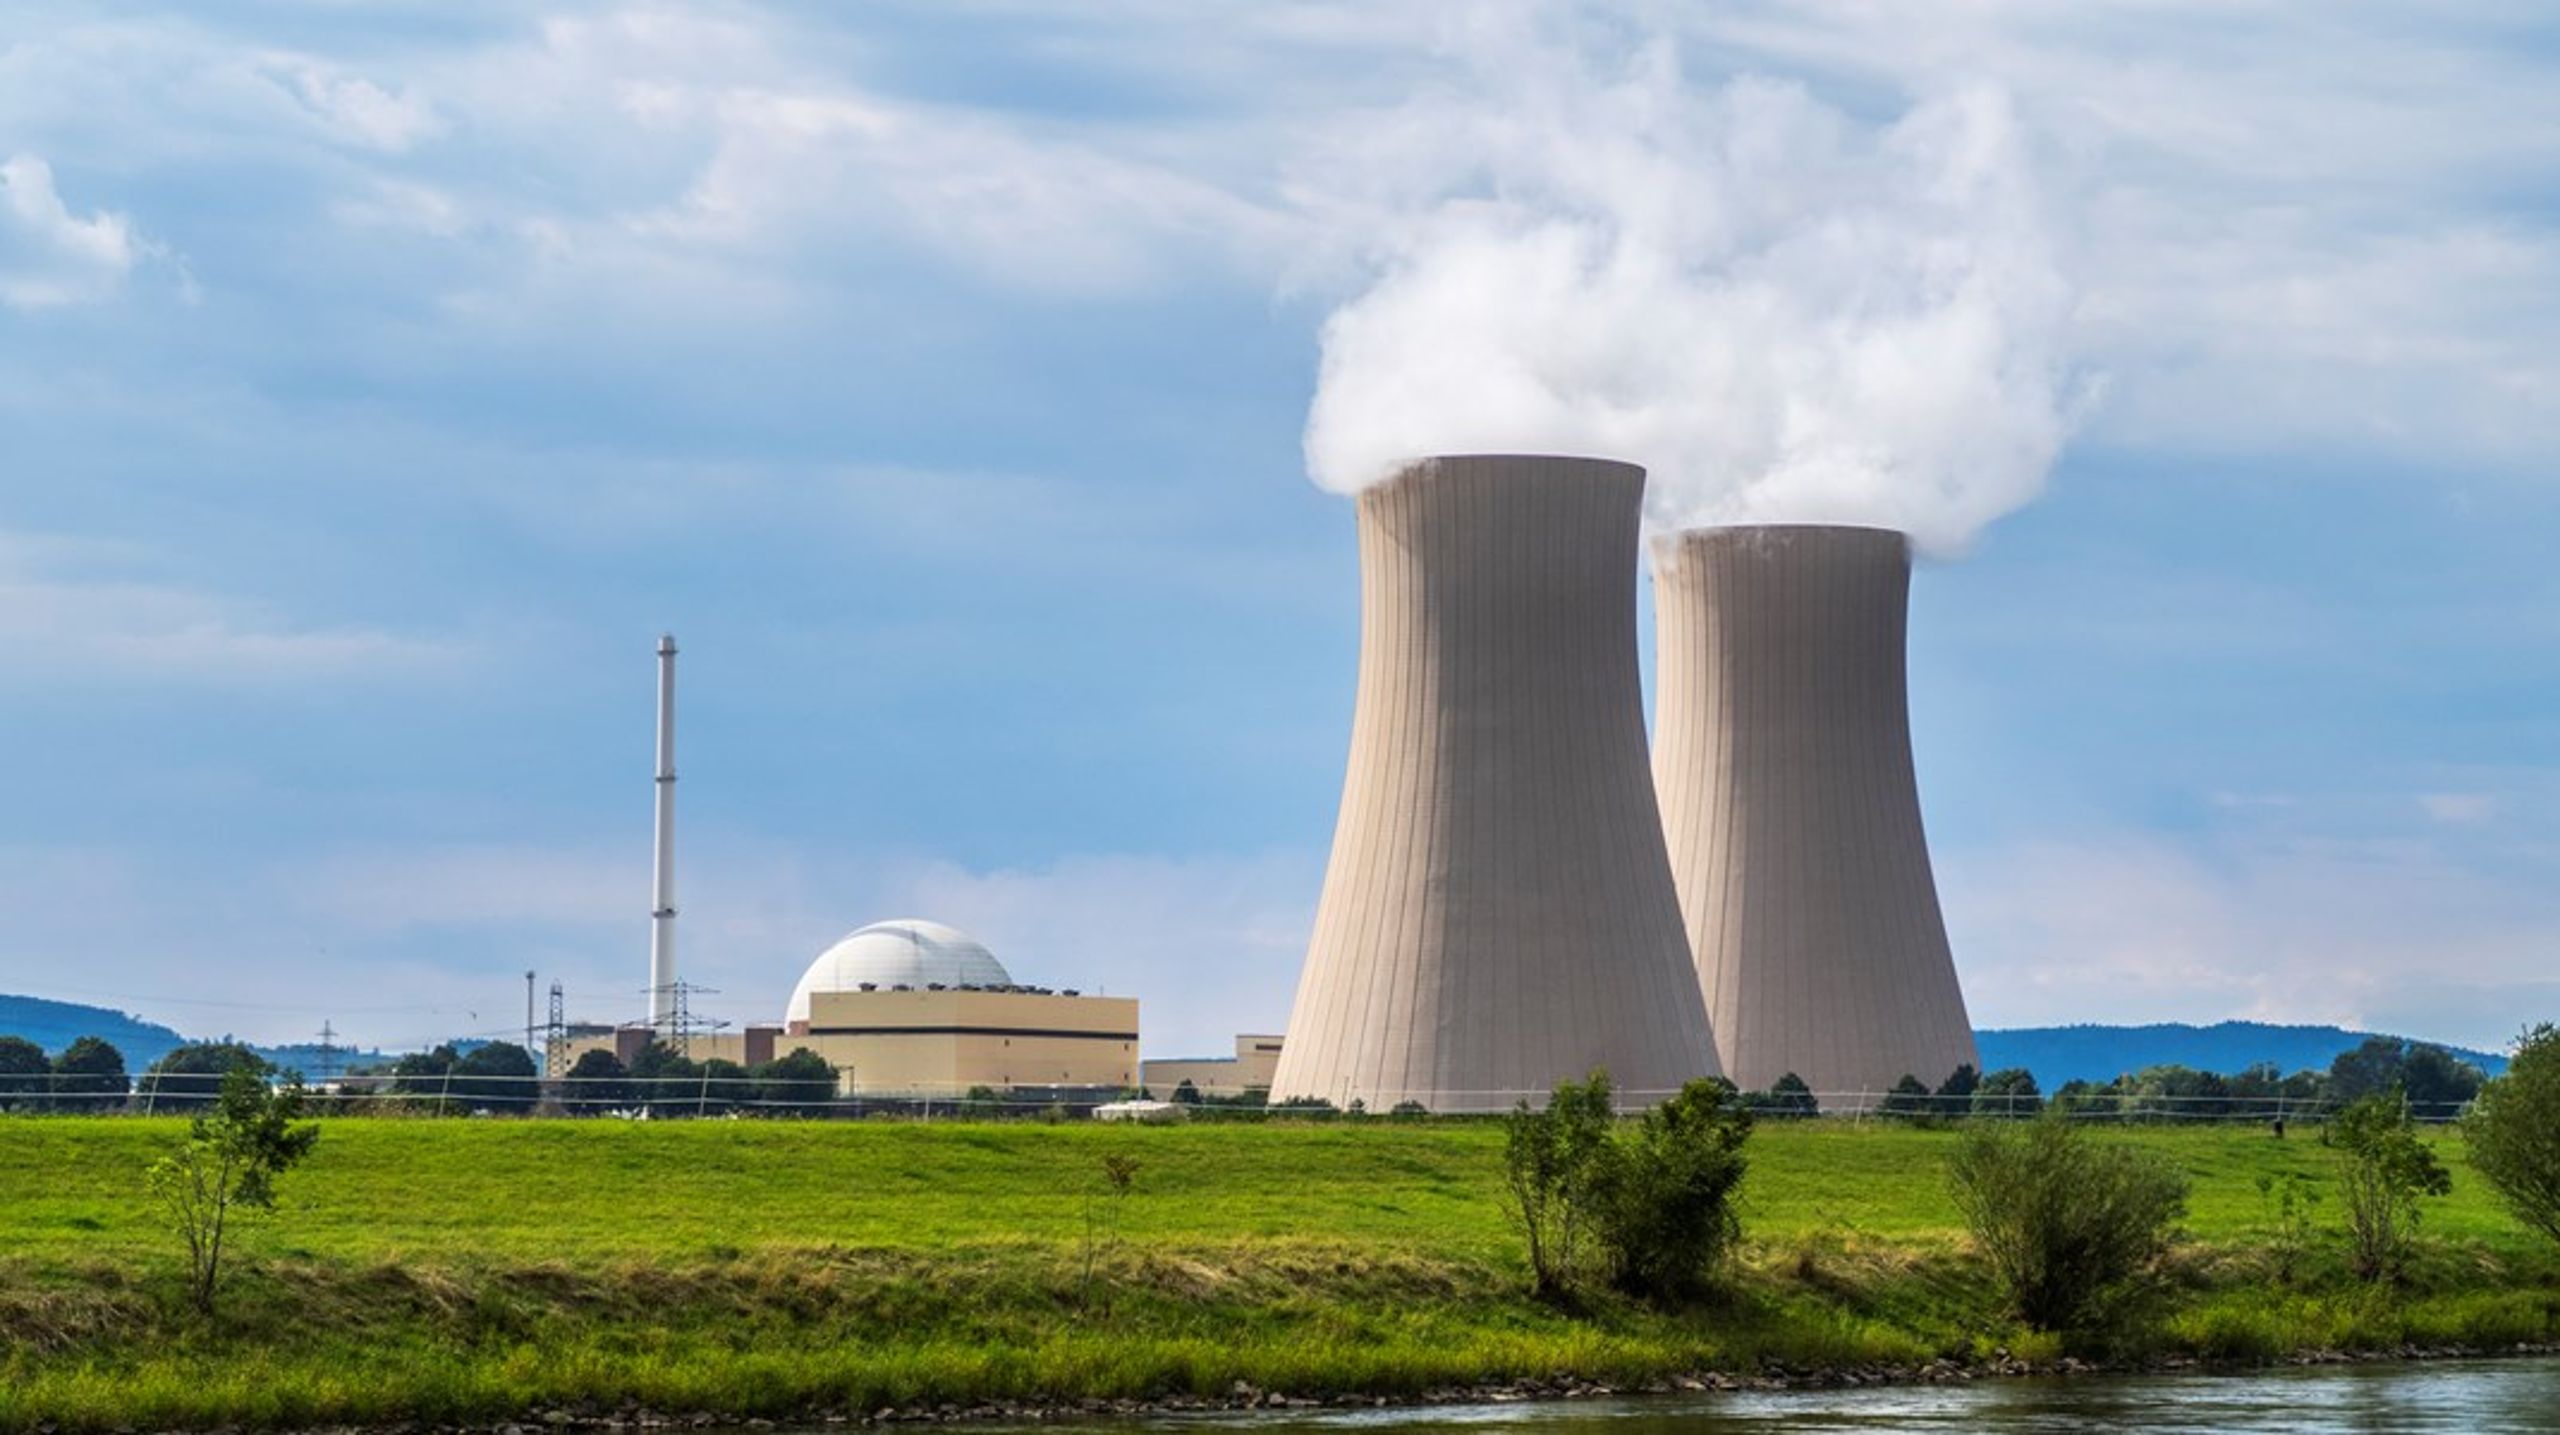 Dersom Norge velger å satse på kjernekraft, må vi forvente å oppleve flere problemer med teknologien enn land som har lang erfaring innen kjernekraft, mener Rystad Energy. På bildet:&nbsp;Atomkraftverket Grohnde, Emmerthal i Tyskland.